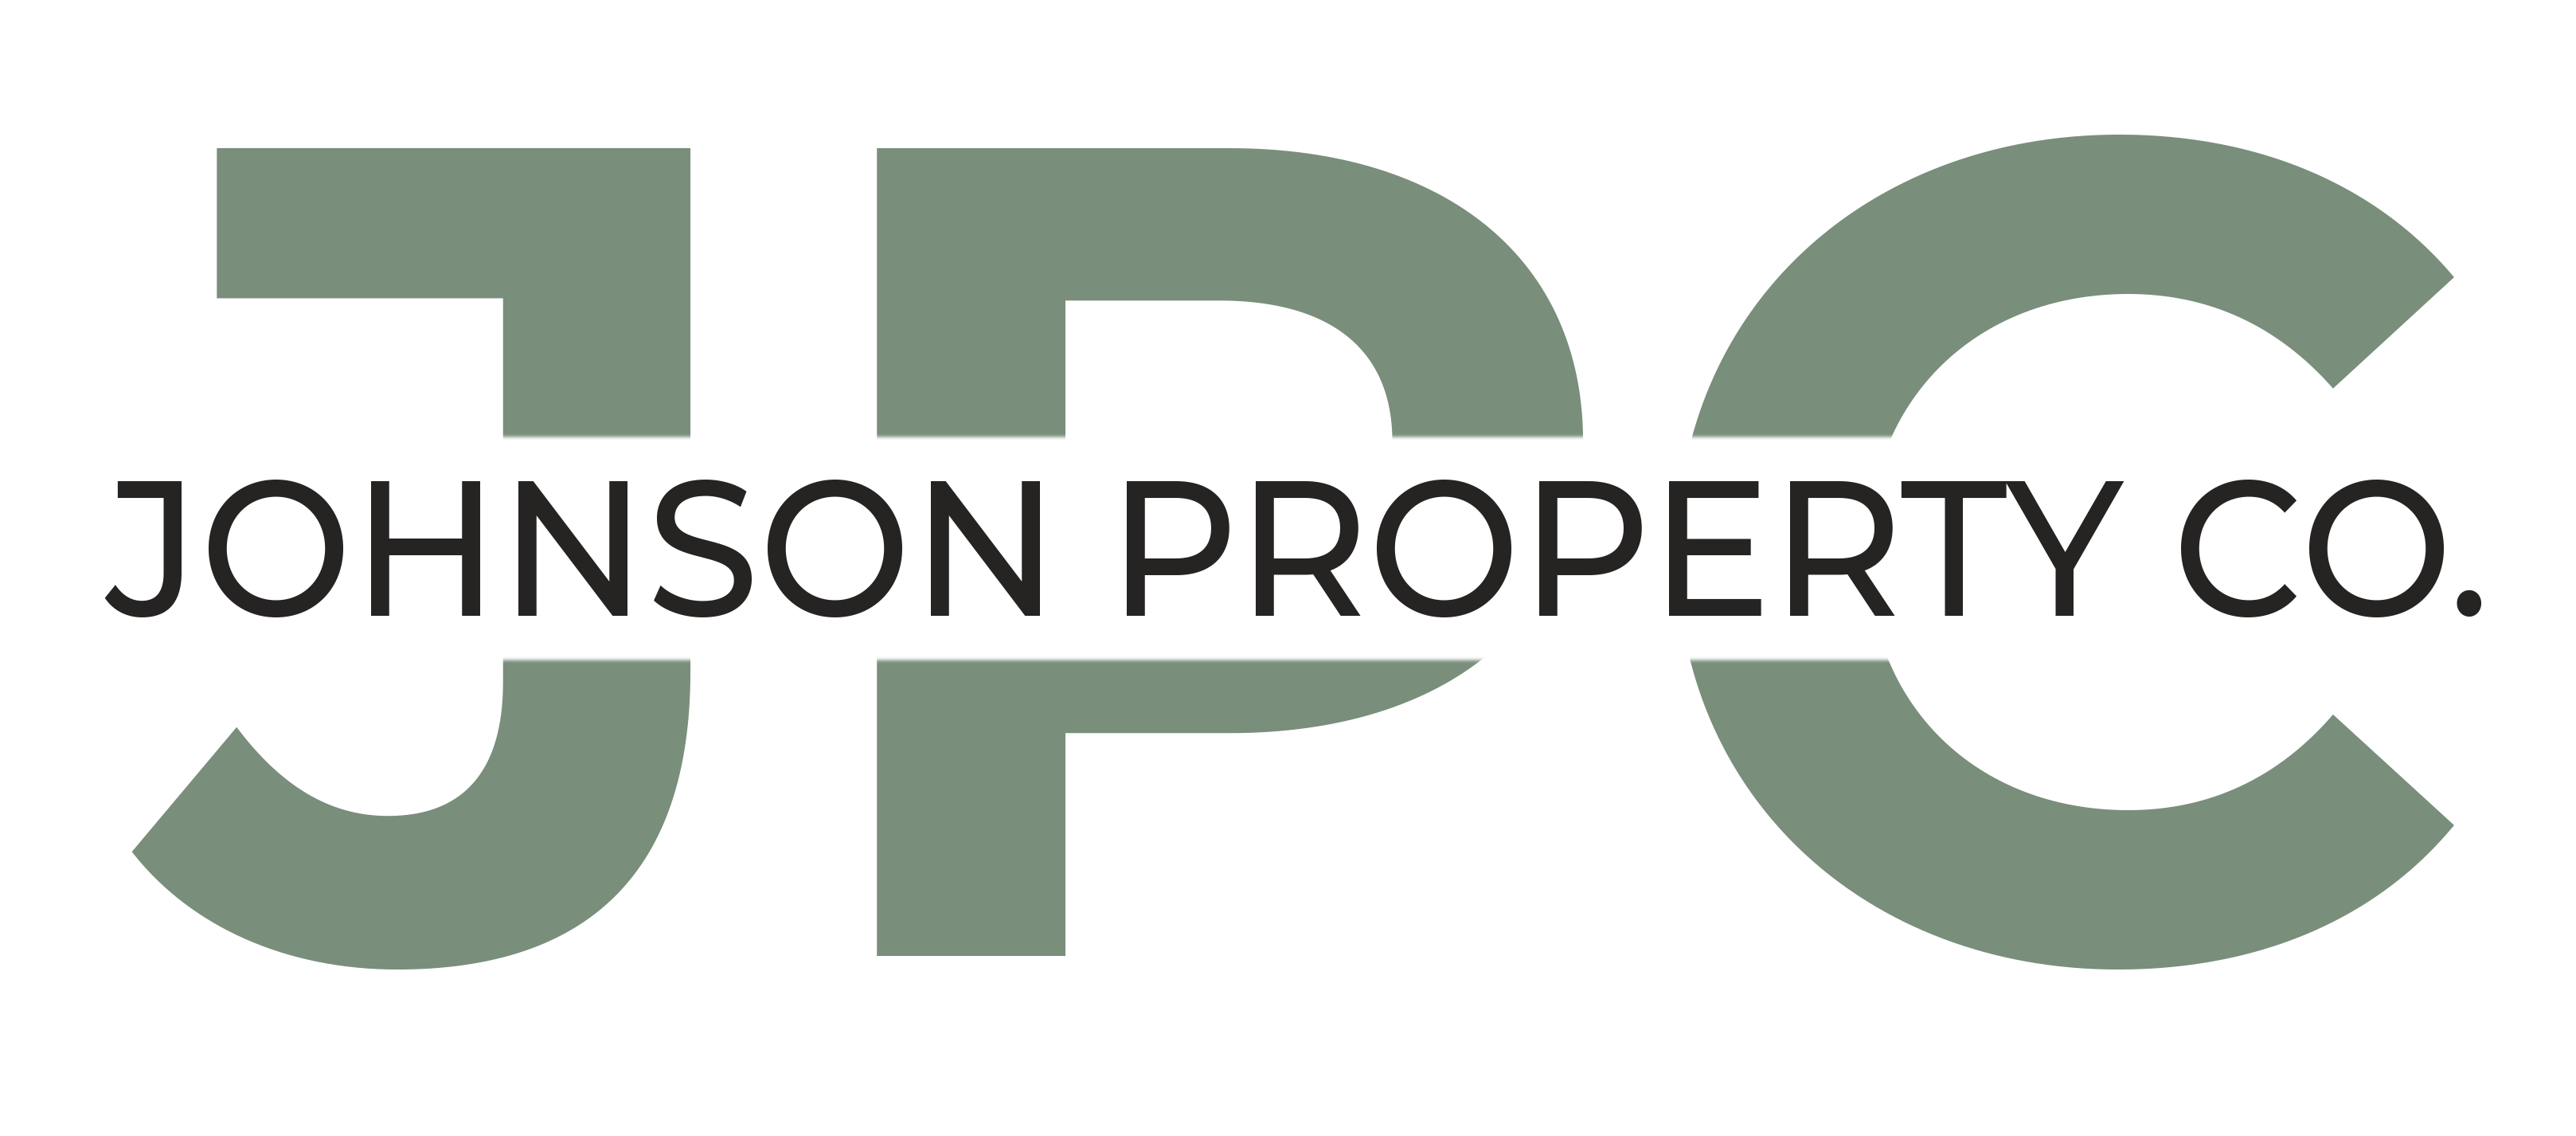 Kristan Johnson - Johnson Property Co.